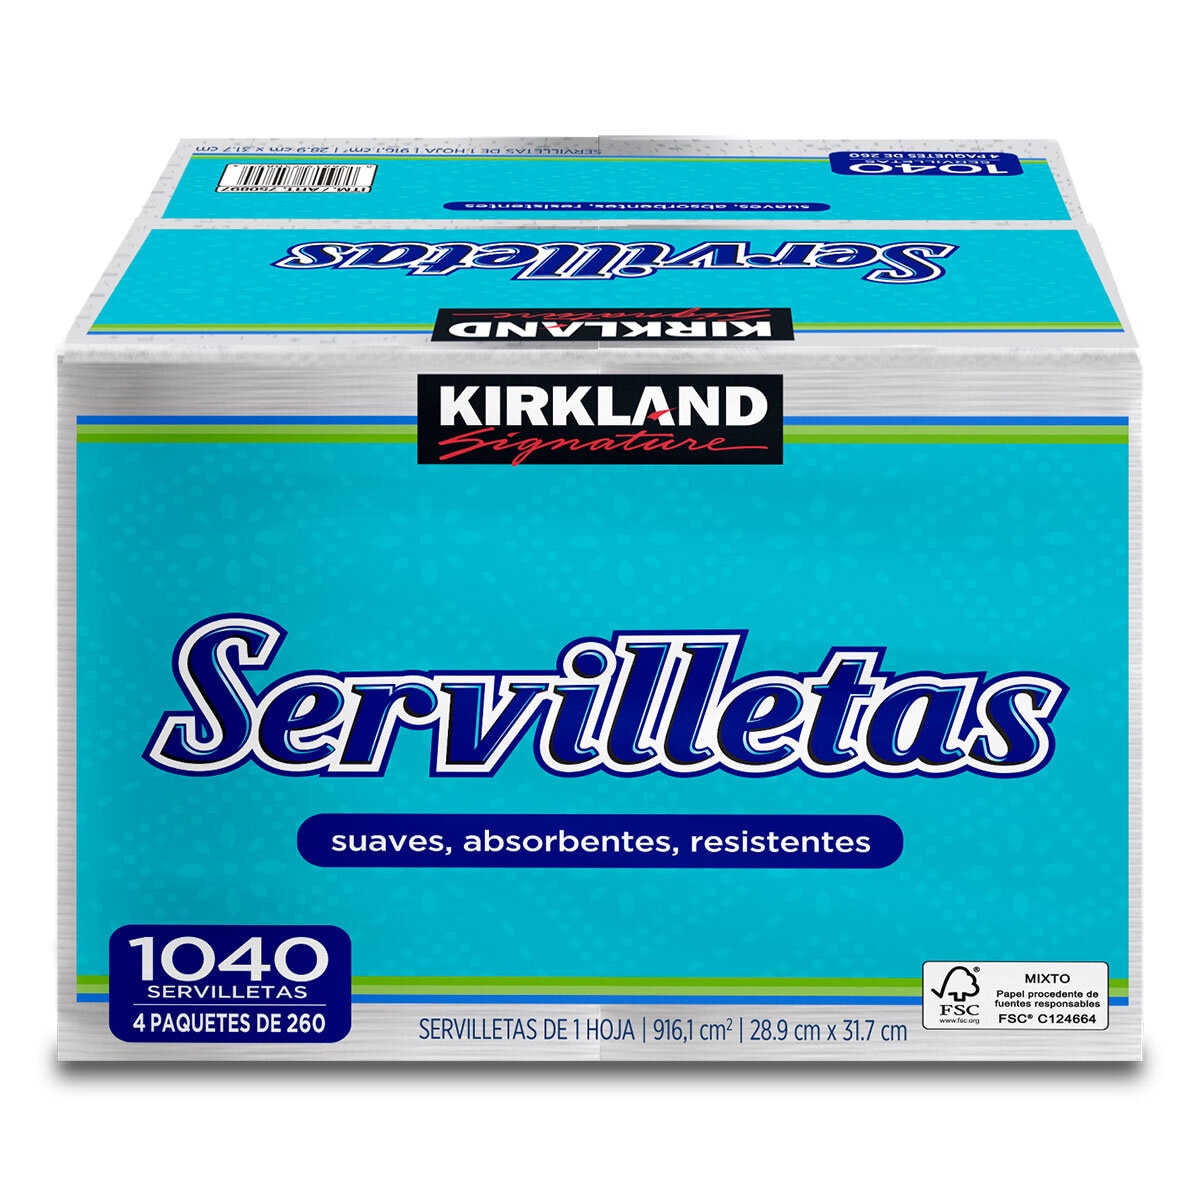 Kirkland Signature Servilletas 4 paquetes de 260 pzas